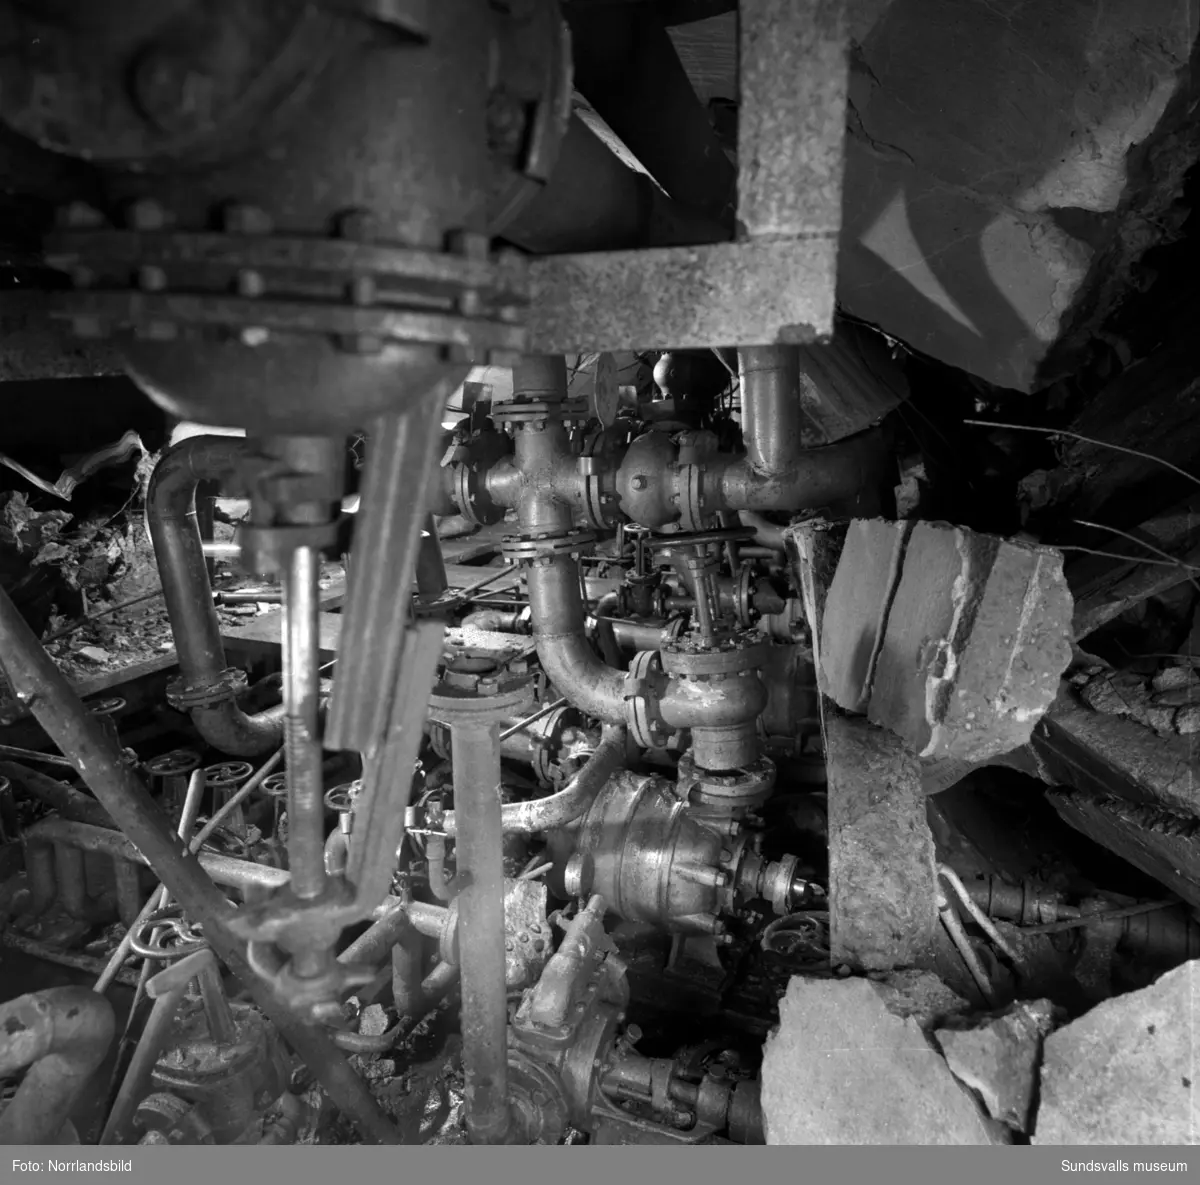 En kraftig bensingasexplosion inträffade i slutet av mars 1957 i bergrumsanläggningen vid Vindskärsvarv. Första bilden visar kontoret som totalförstördes. Föreståndare Paul Boström som befann sig i byggnaden lyckades rädda sig ut genom fönstret. Räddningsmanskapets jobb var riskfyllt och man befarade länge att en ännu större katastrof skulle kunna inträffa på grund av läckande bensin och bensingaser.